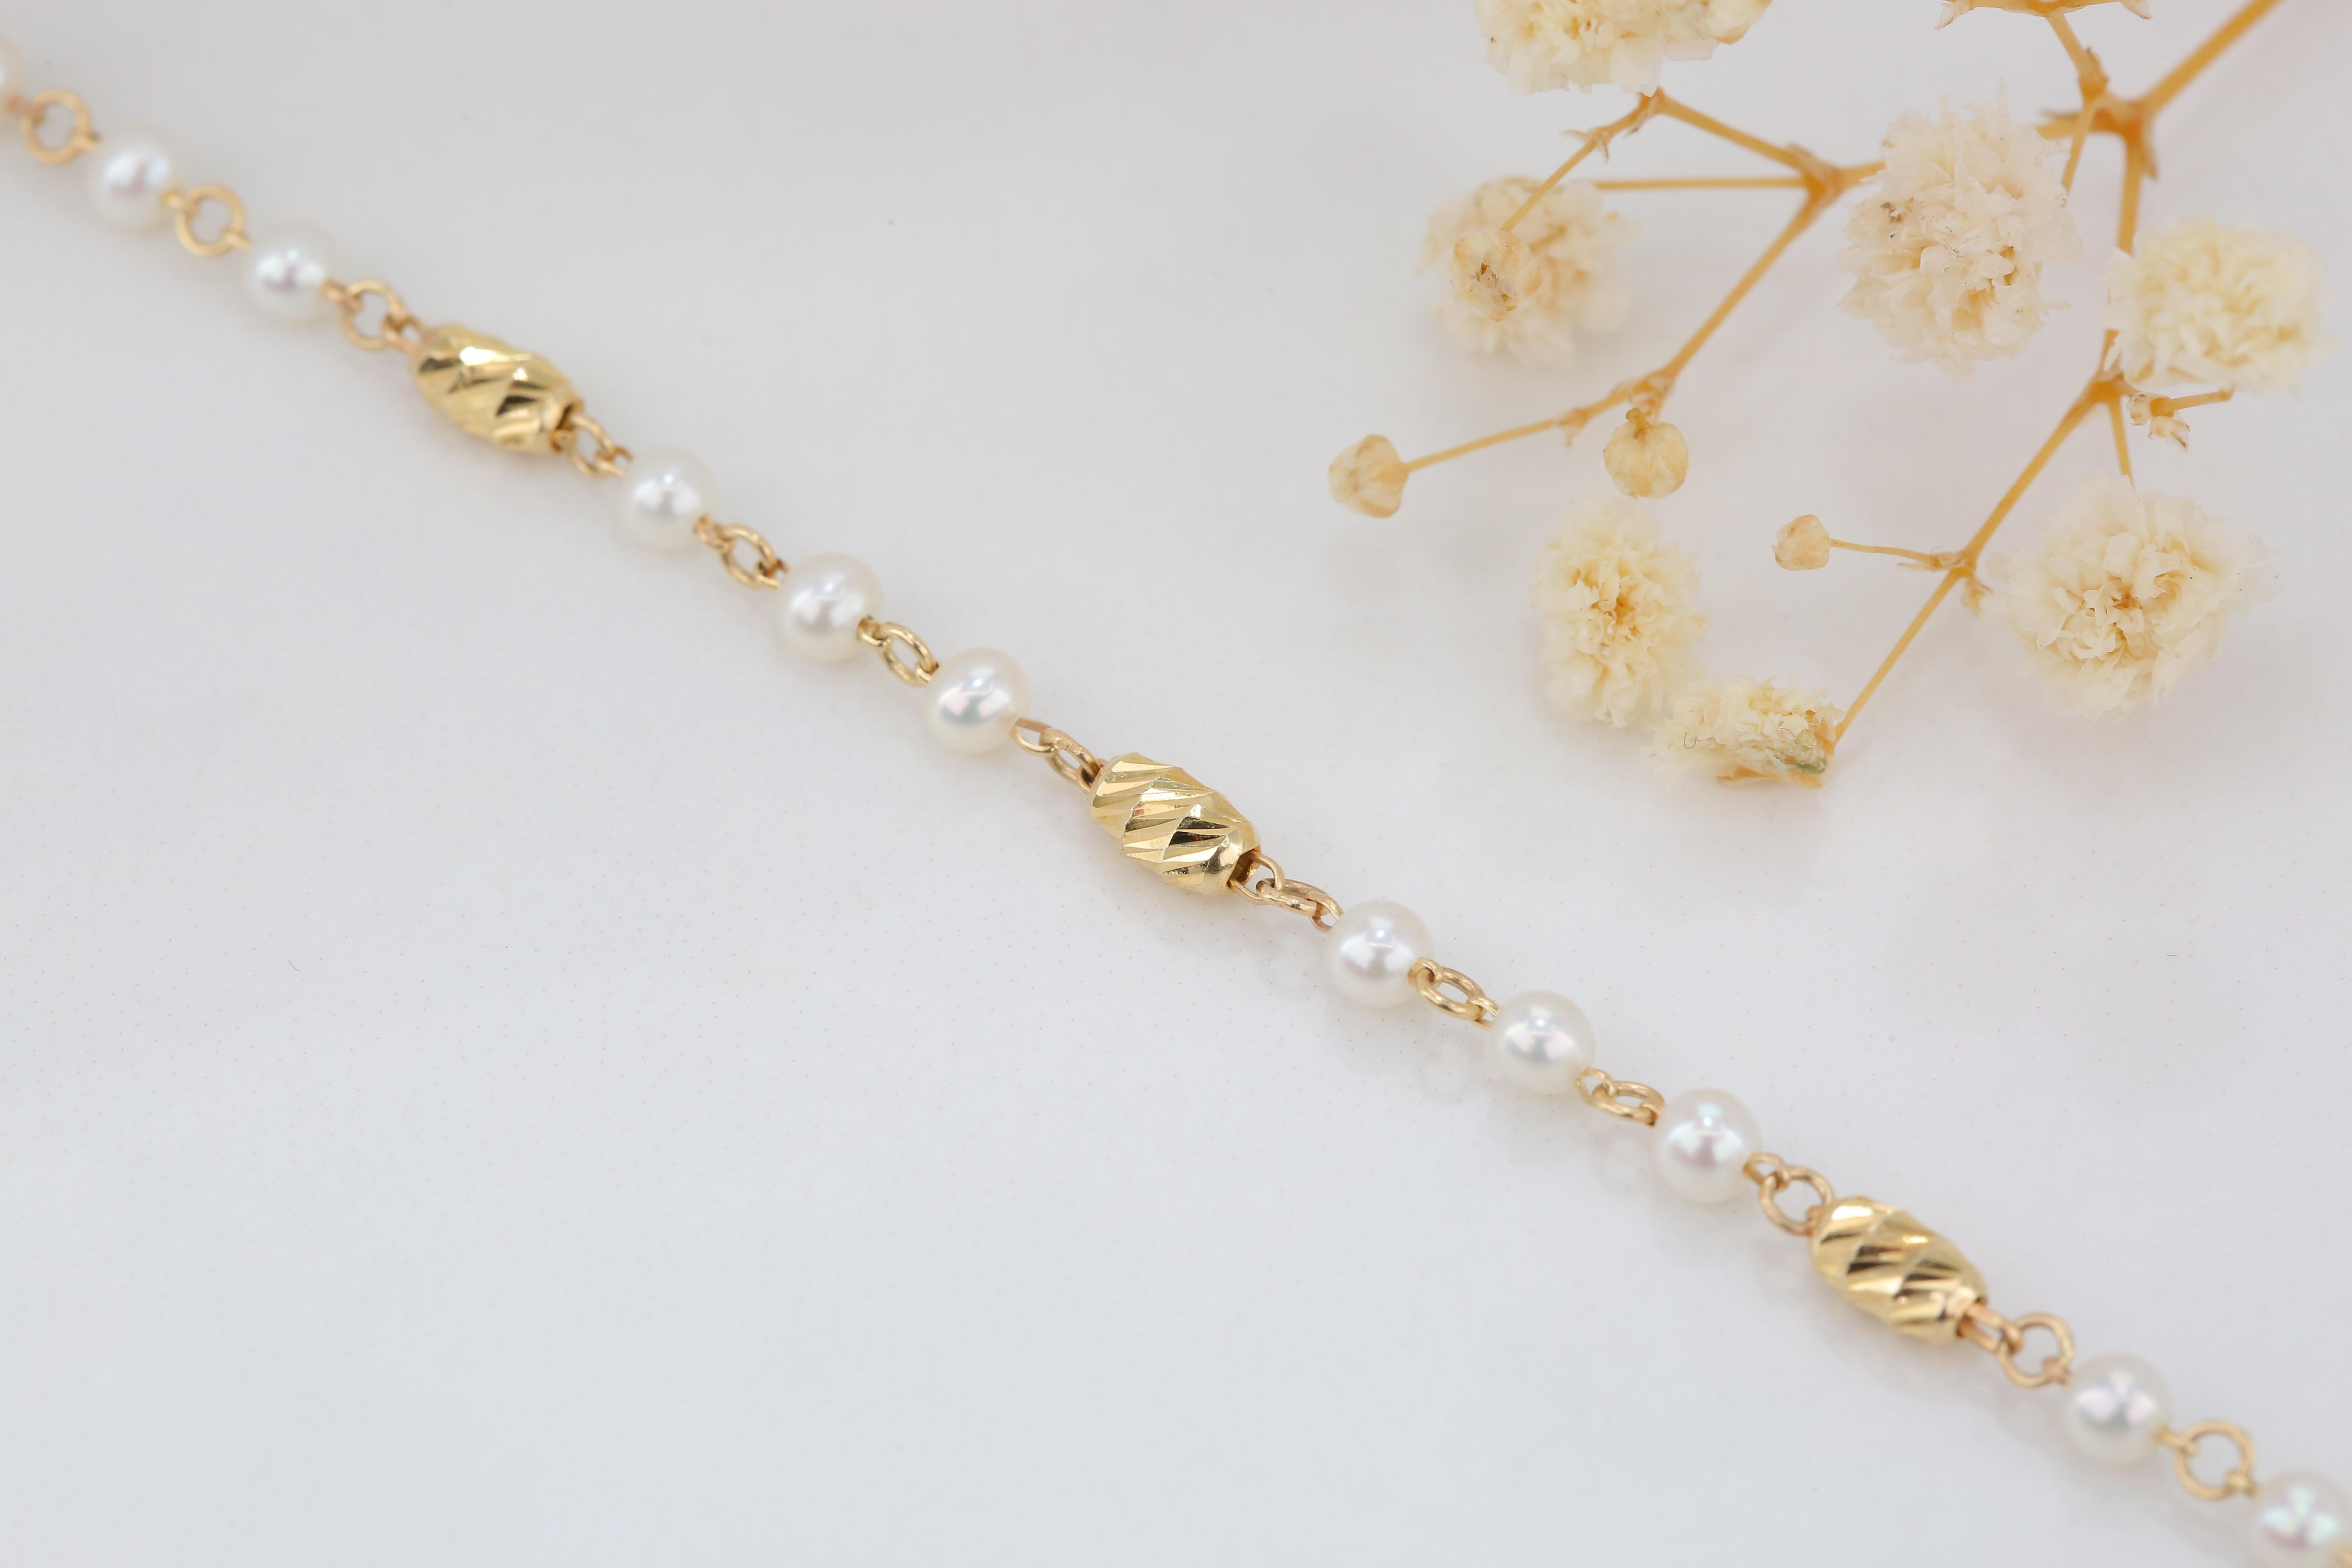 Bracelet en or 14k avec perles - Bracelet de perles en or 14k - Bracelet de perles Carlos bracelet délicat créé par les mains de la chaîne aux formes des pierres. De bonnes idées de bracelet délicat ou de bracelet empilable pour elle.

J'ai utilisé